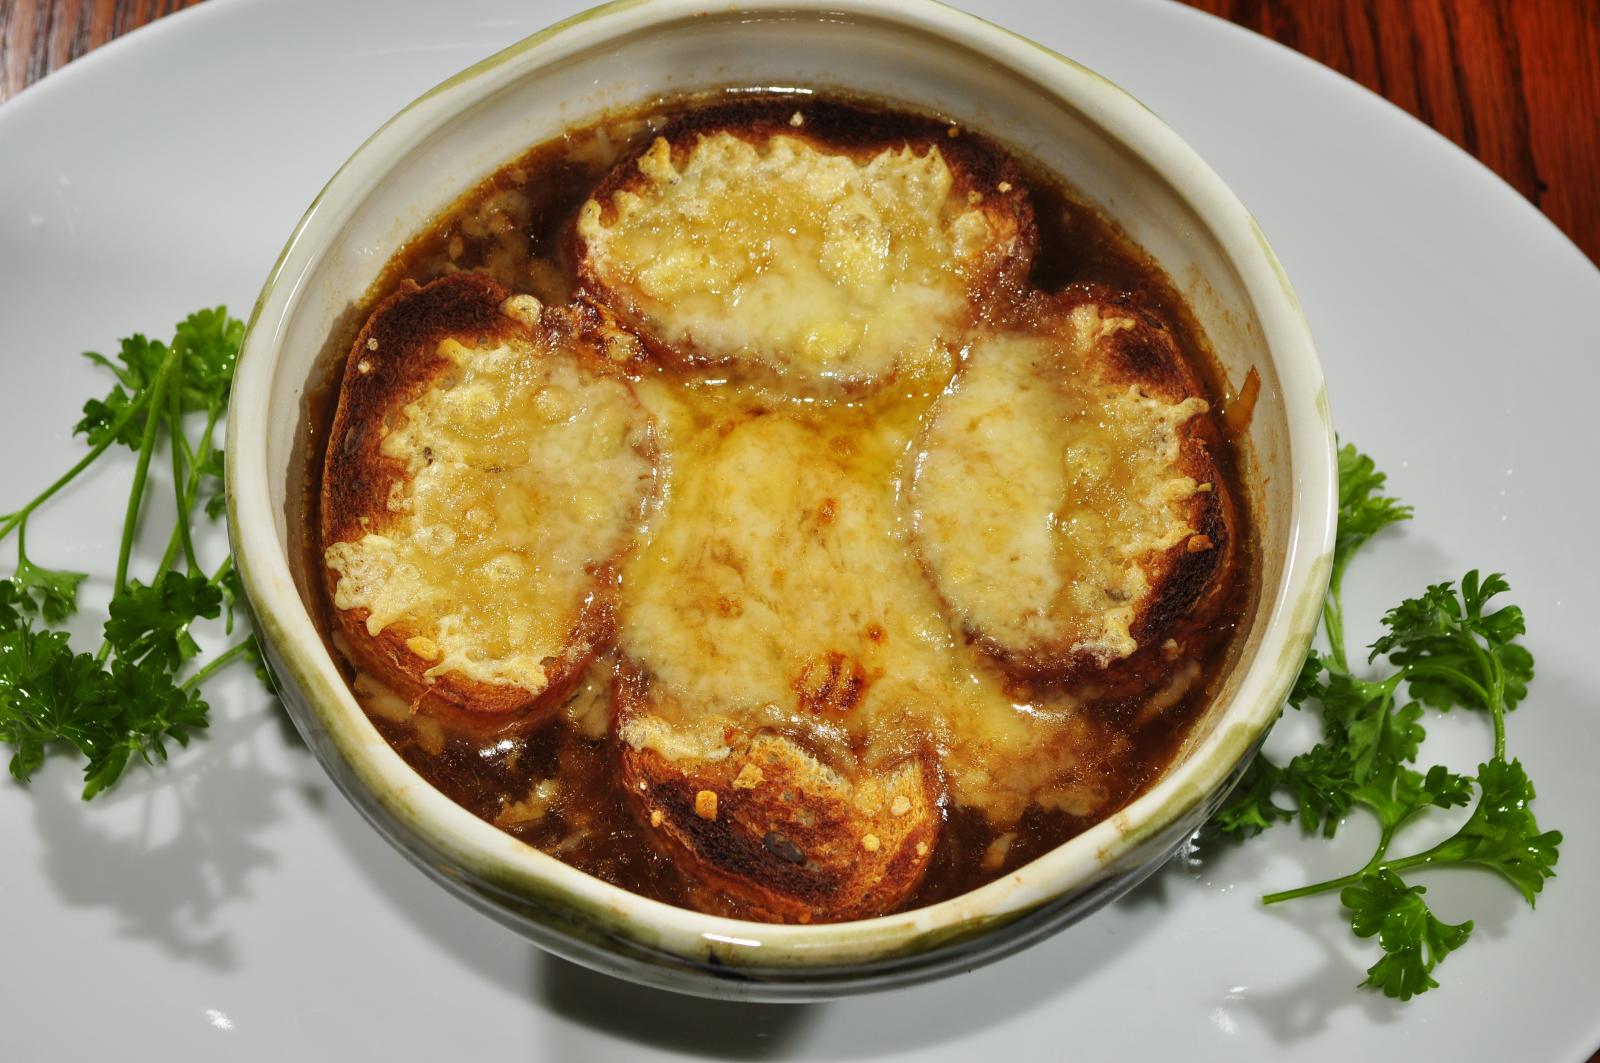 Soupe à l’oignon (French Onion Soup)